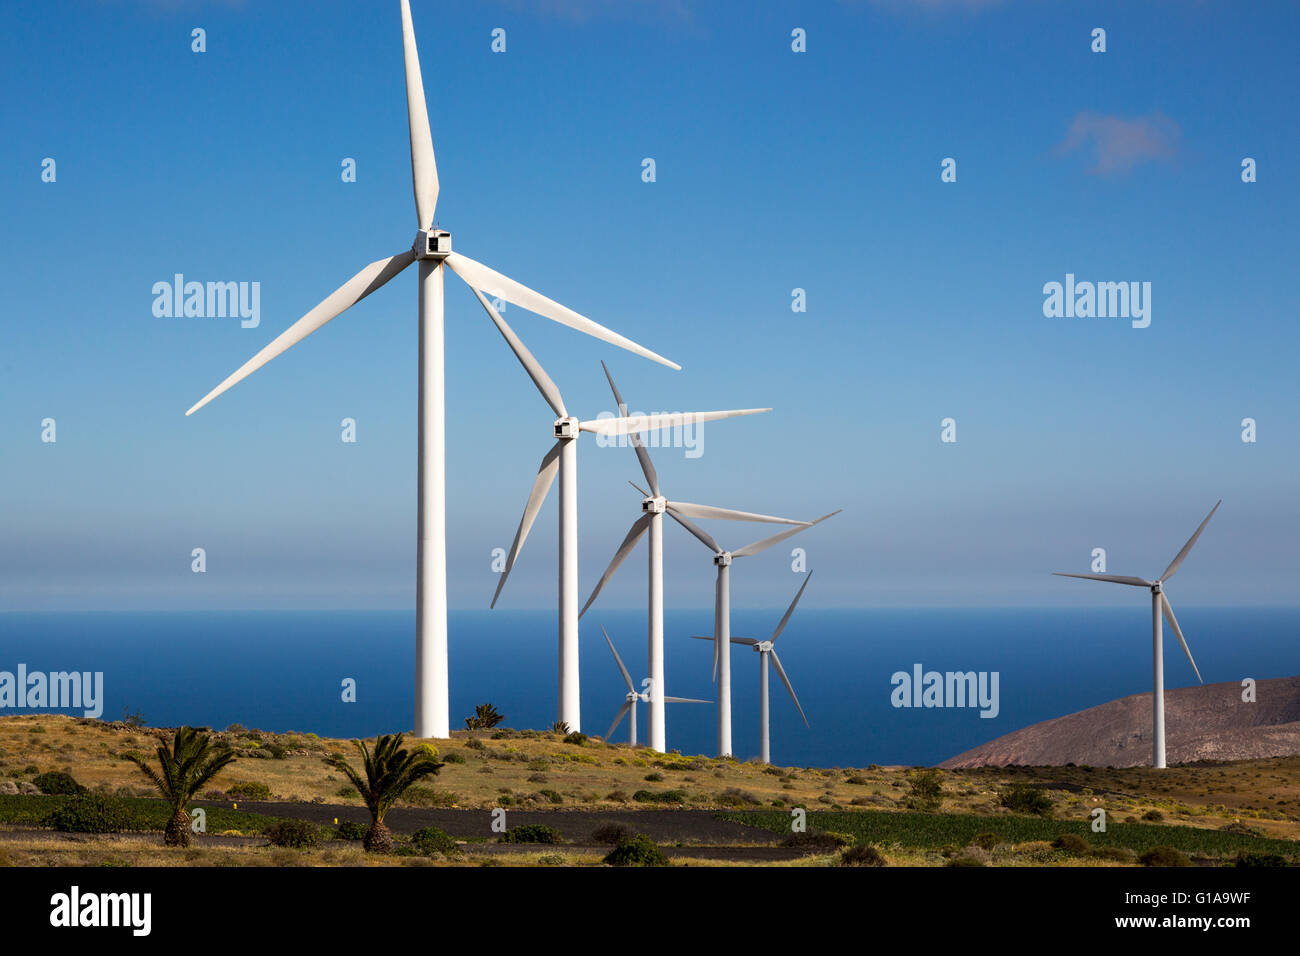 Turbines at Eolicas de Lanzarote wind farm, Lanzarote, Canary Islands, Spain Stock Photo